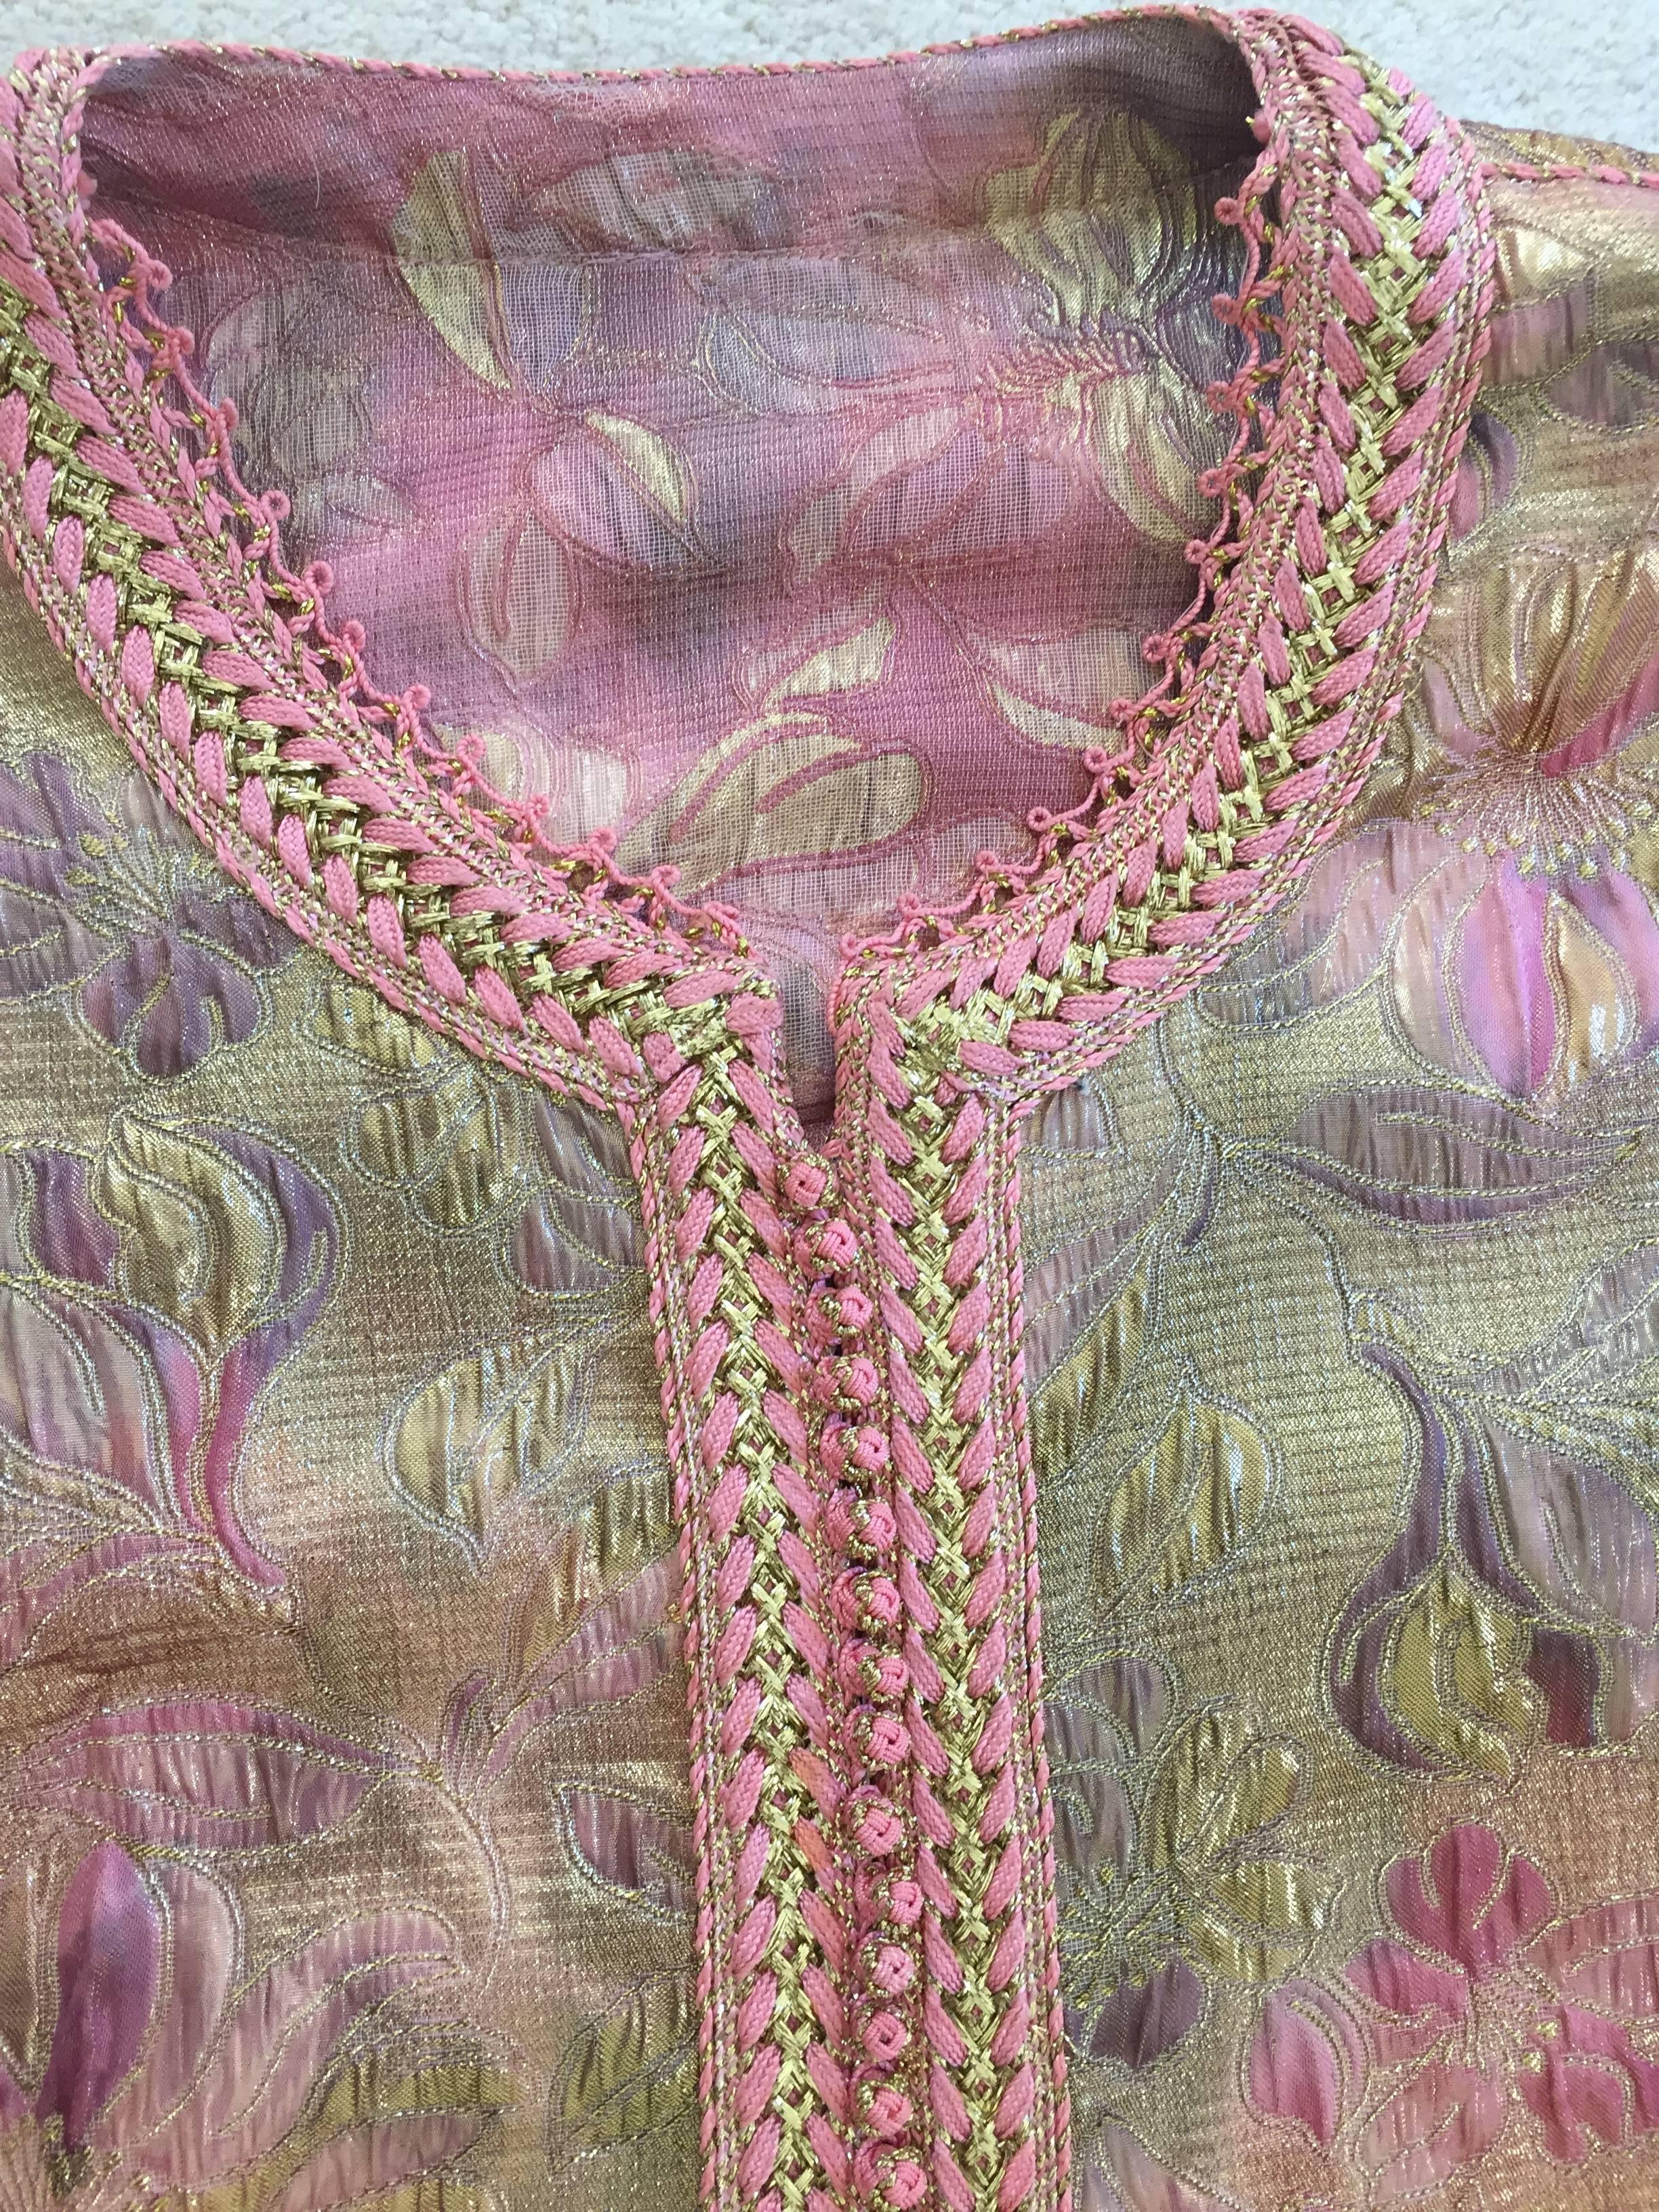 Moroccan Pink Lame Caftan or Kaftan Maxi Dress 2